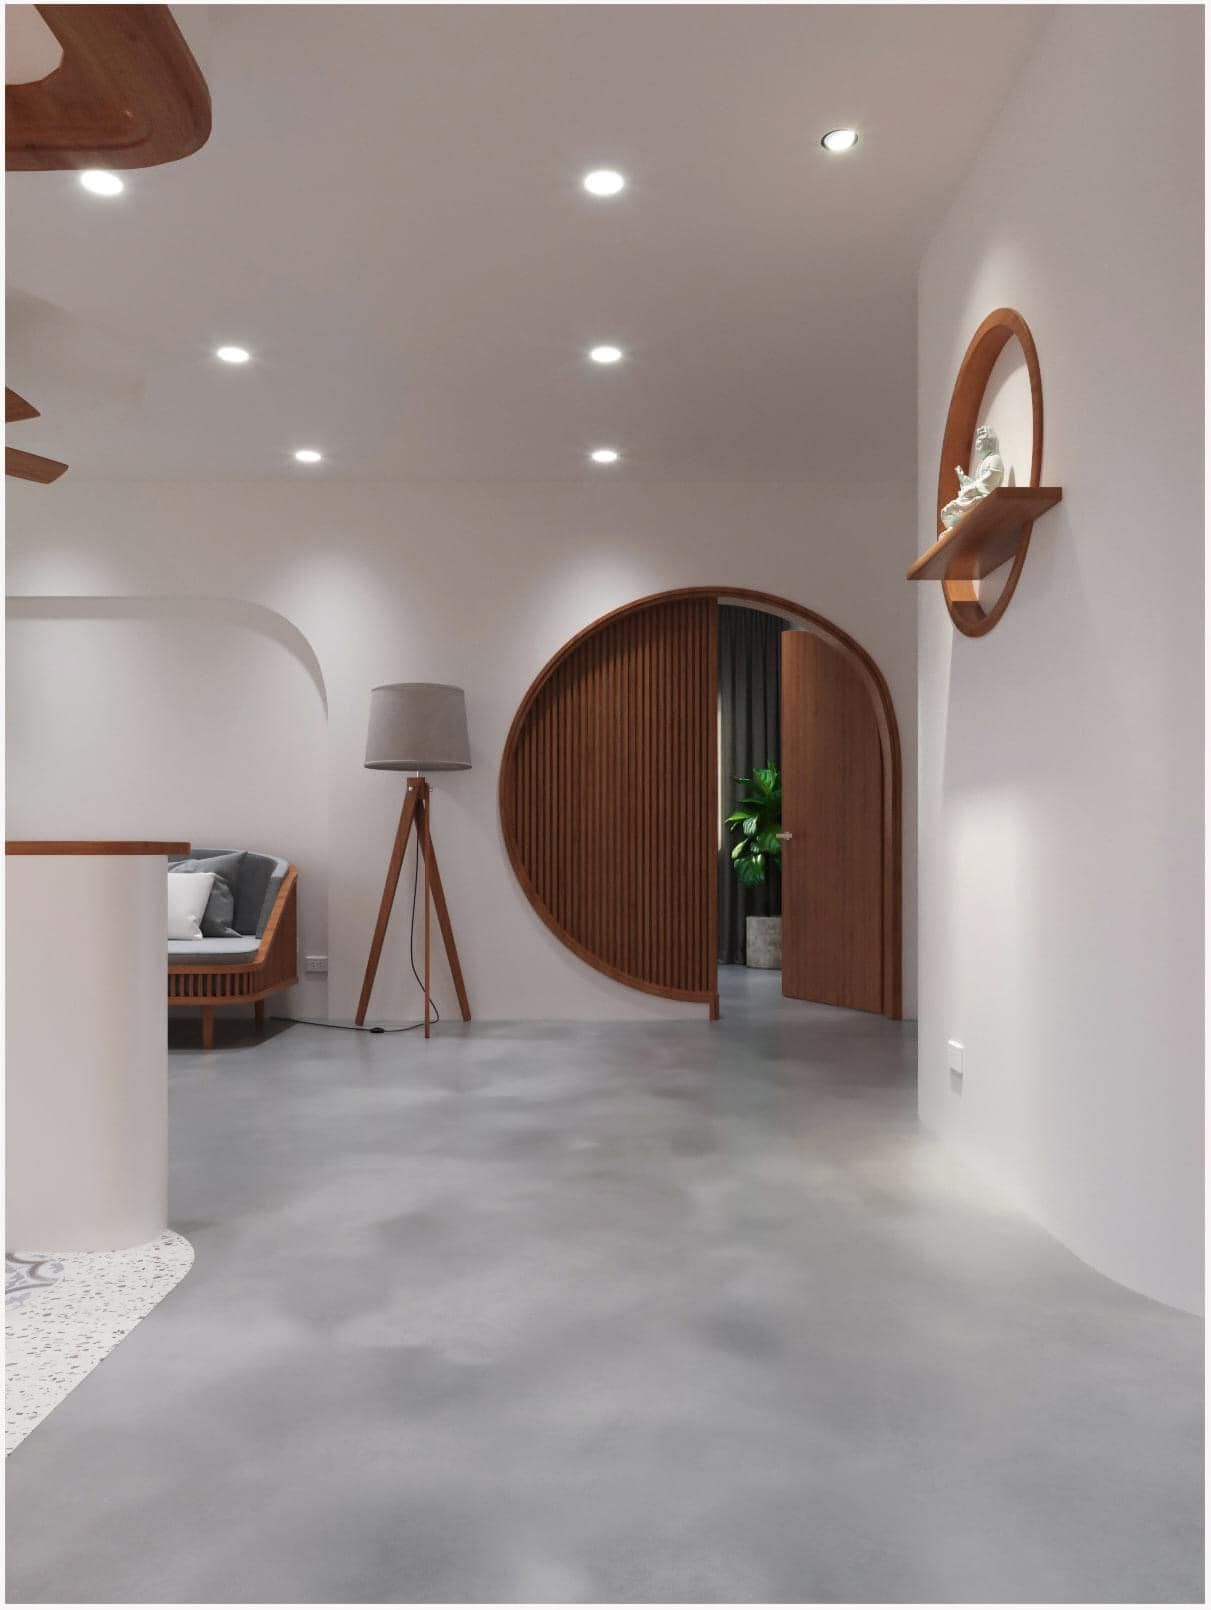 Cửa được thiết kế dạng vòm tinh tế với chất liệu gỗ tự nhiên tông màu trầm nổi bật trên nền sơm trắng